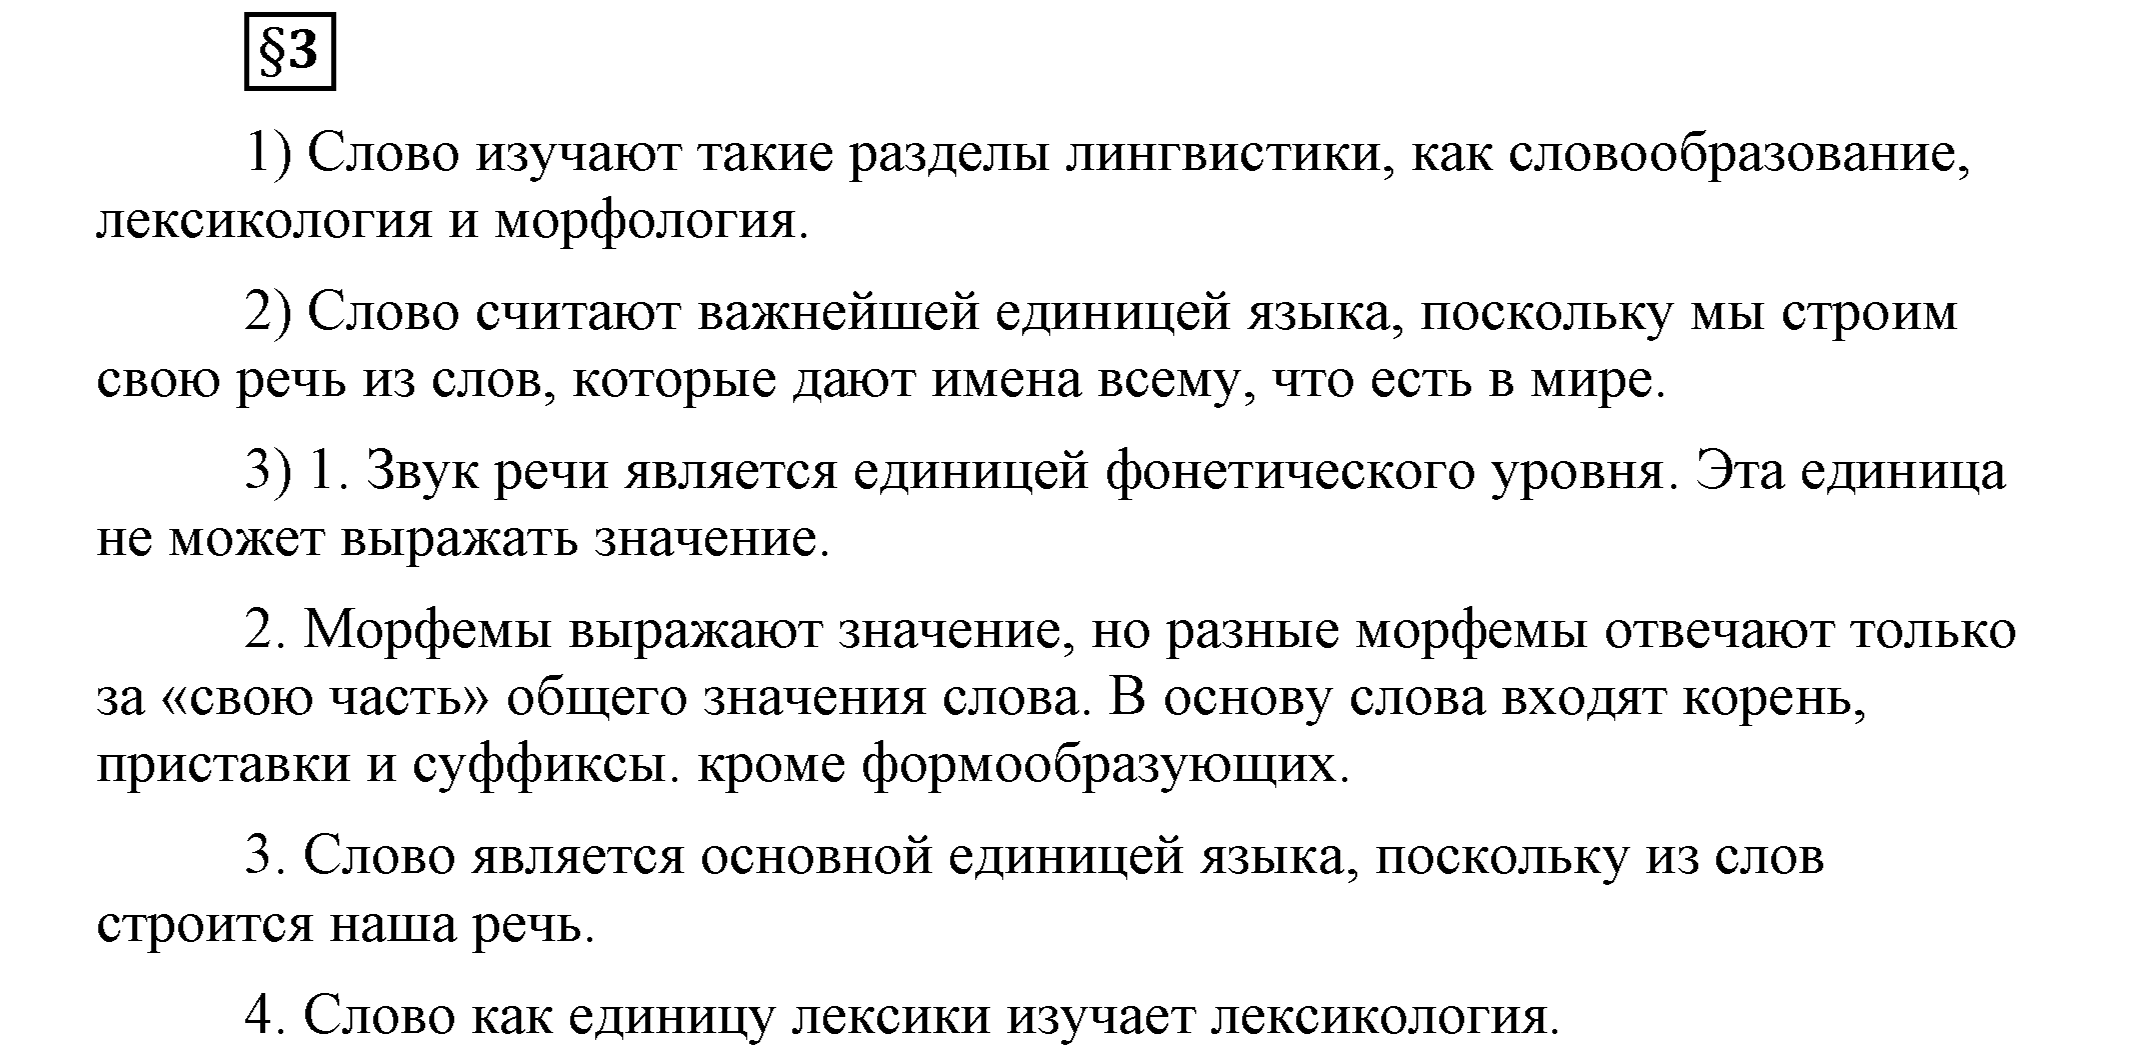 часть 1 страница 228 глава 4 ответы на дополнительные вопросы к §3 русский язык 5 класс Шмелёв 2018 год